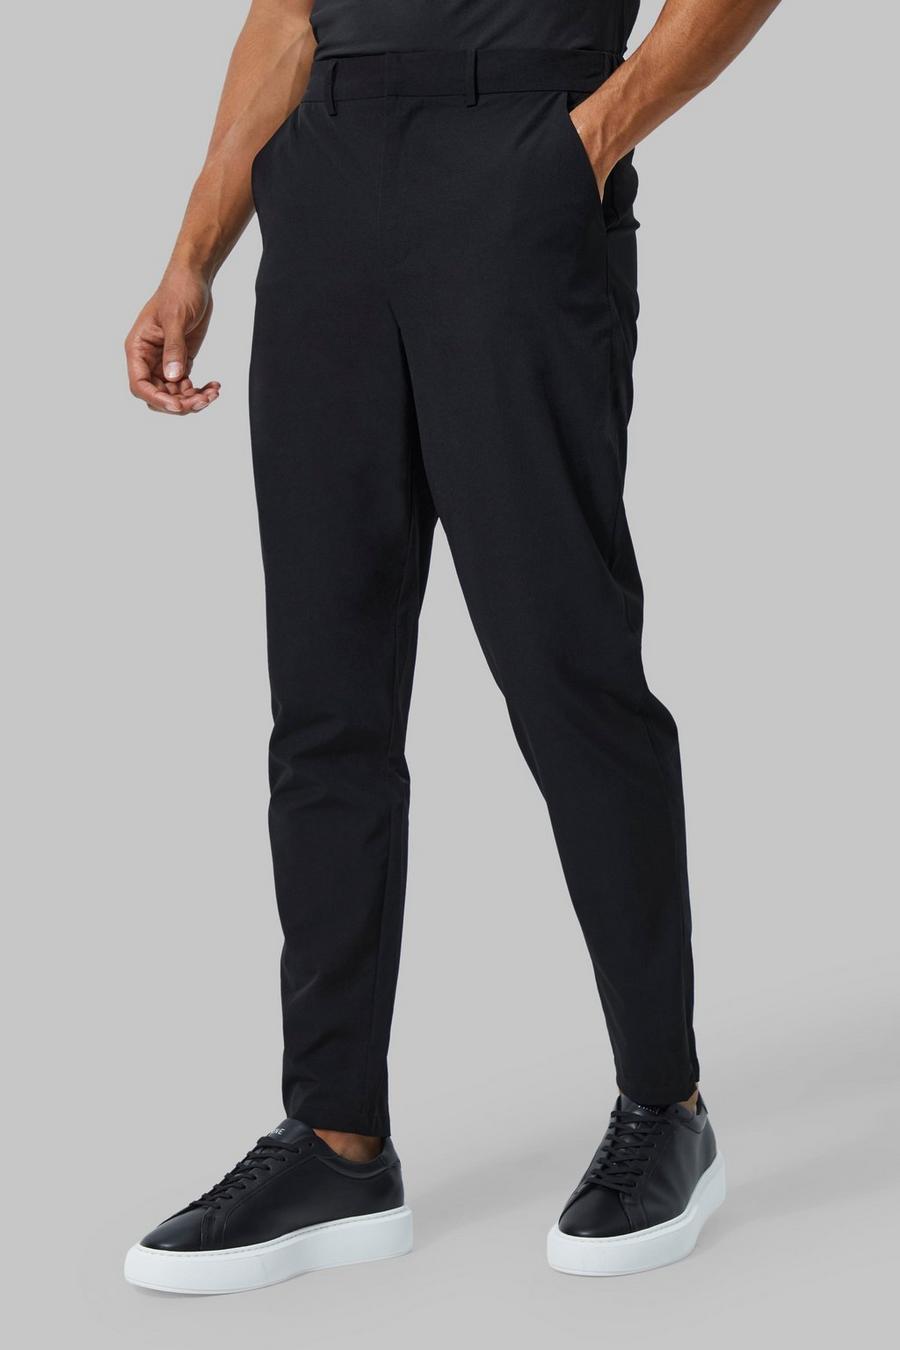 Black noir Man Active Stretch Golf Trousers